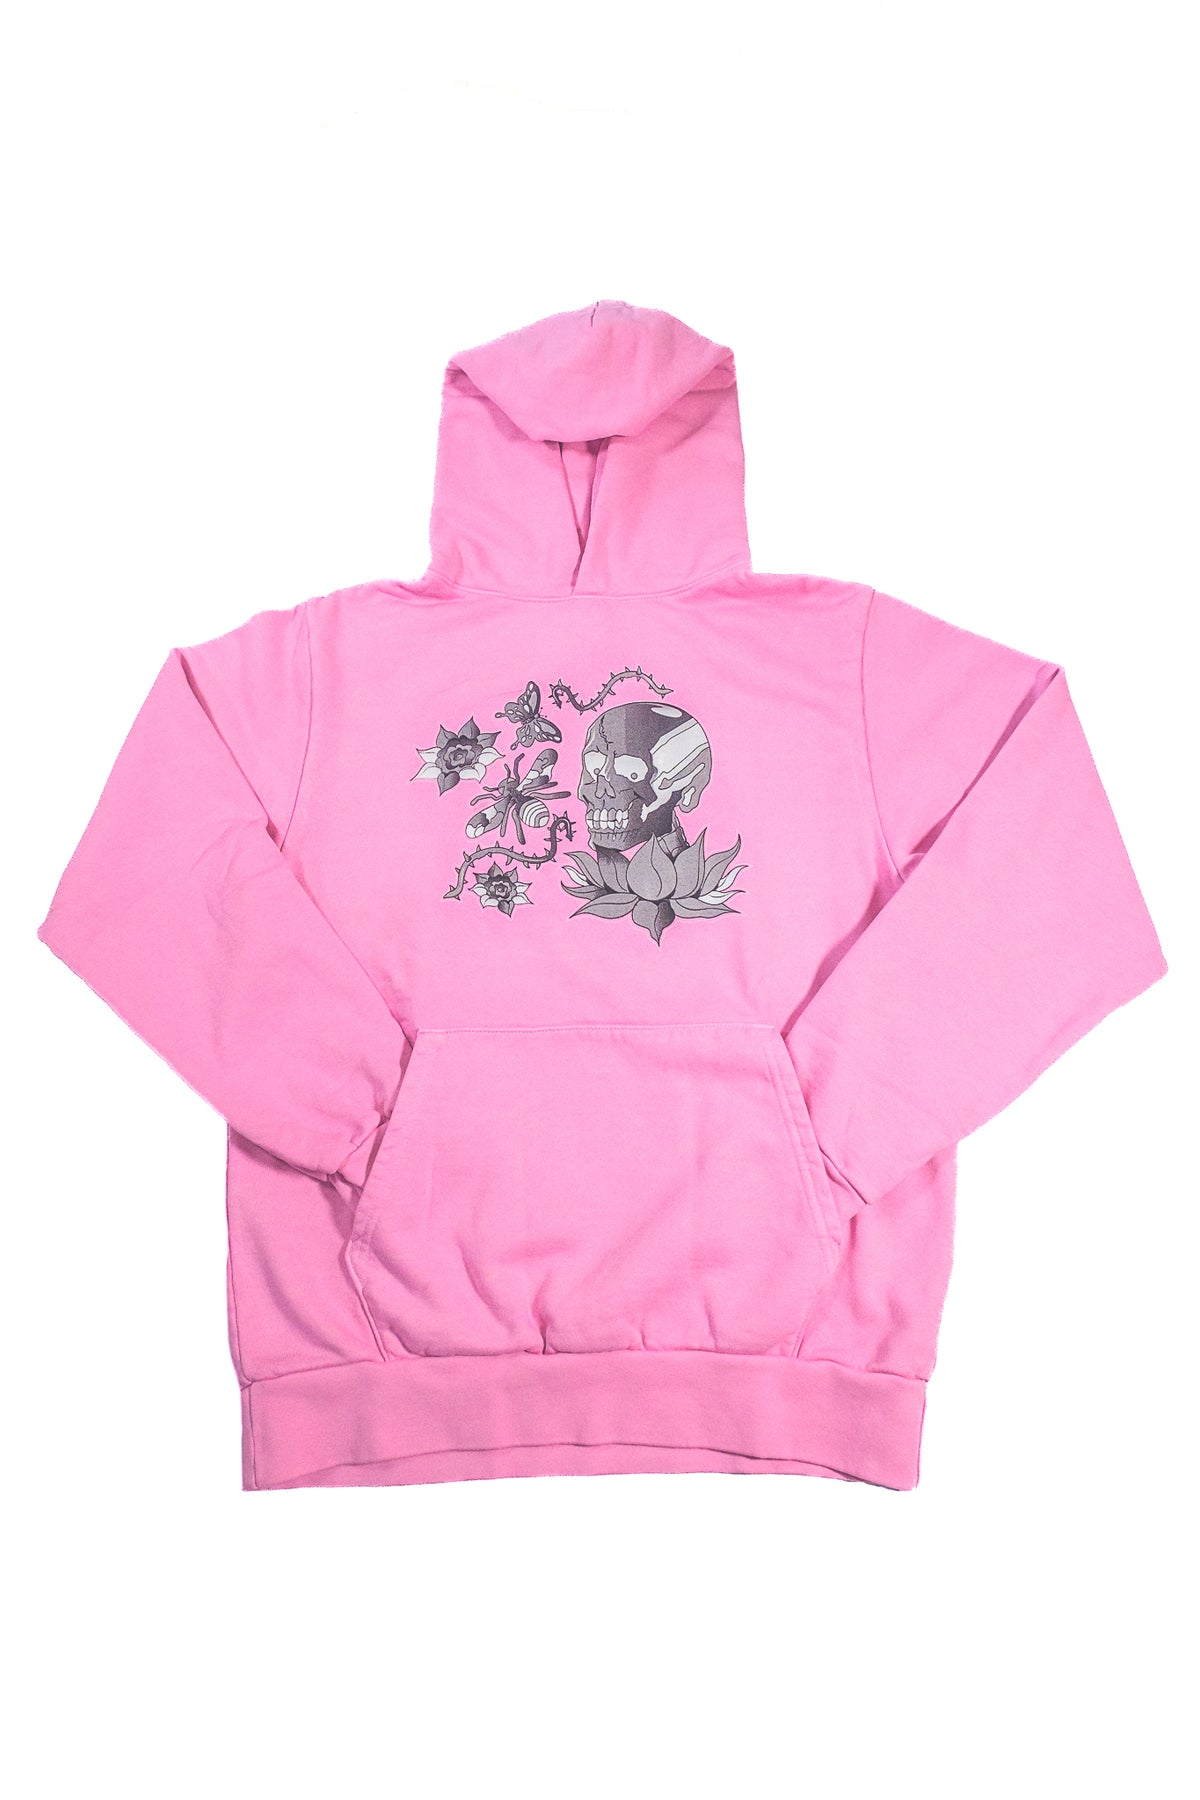 Premium 'ETERNAL' Heavyweight Hooded Sweatshirt (Pink Orchid